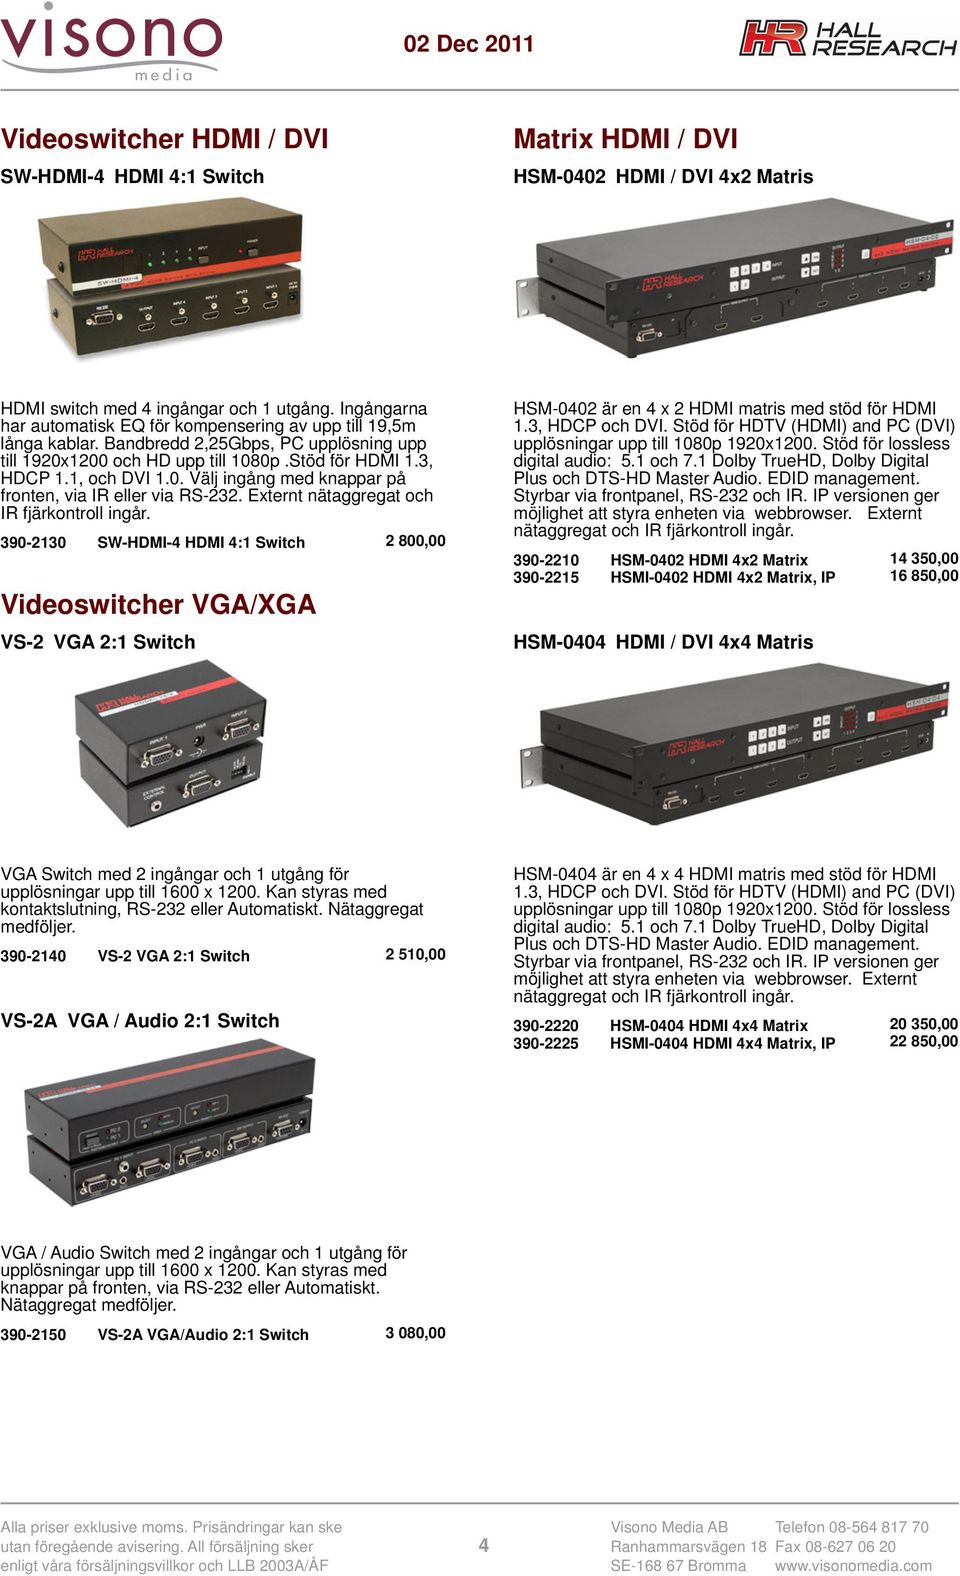 Externt nätaggregat och IR fjärkontroll ingår. 390-2130 SW-HDMI-4 HDMI 4:1 Switch 2 800,00 Videoswitcher VGA/XGA VS-2 VGA 2:1 Switch HSM-0402 är en 4 x 2 HDMI matris med stöd för HDMI 1.